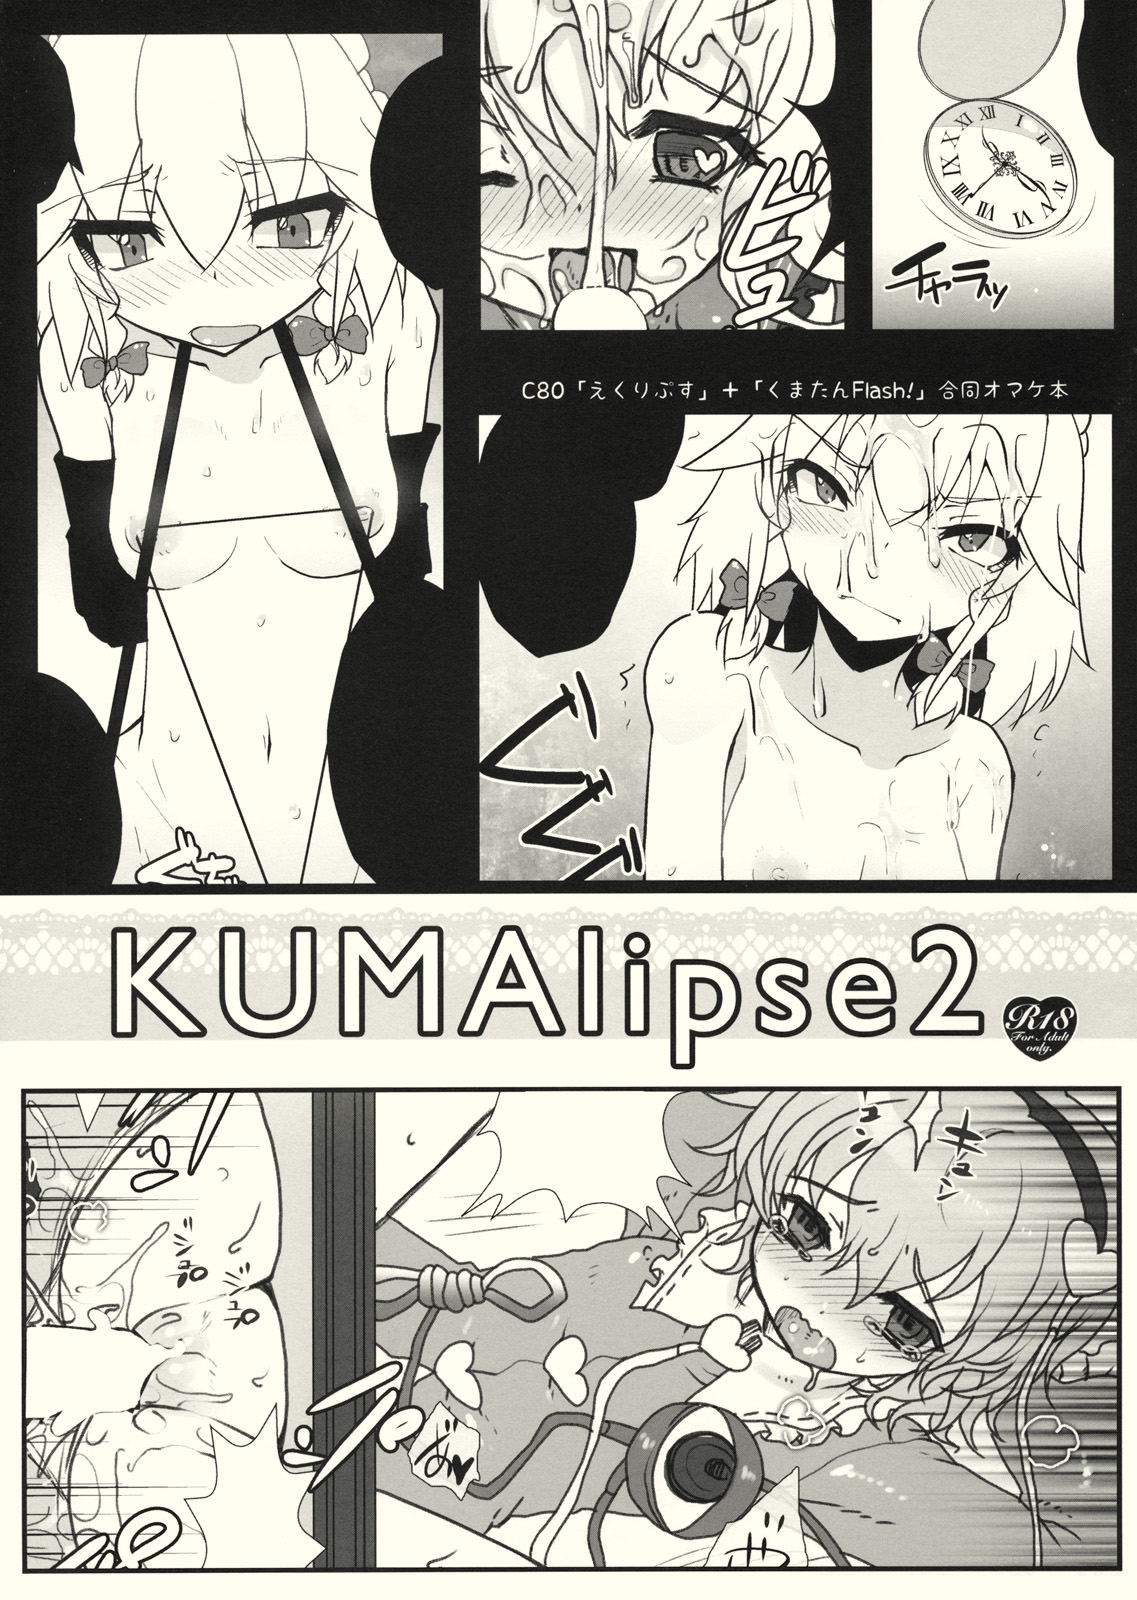 (C80) [Kuma-tan Flash!, Eclipse (Hanao., Rougetu)] KUMAlipse2 (Touhou Project) page 1 full